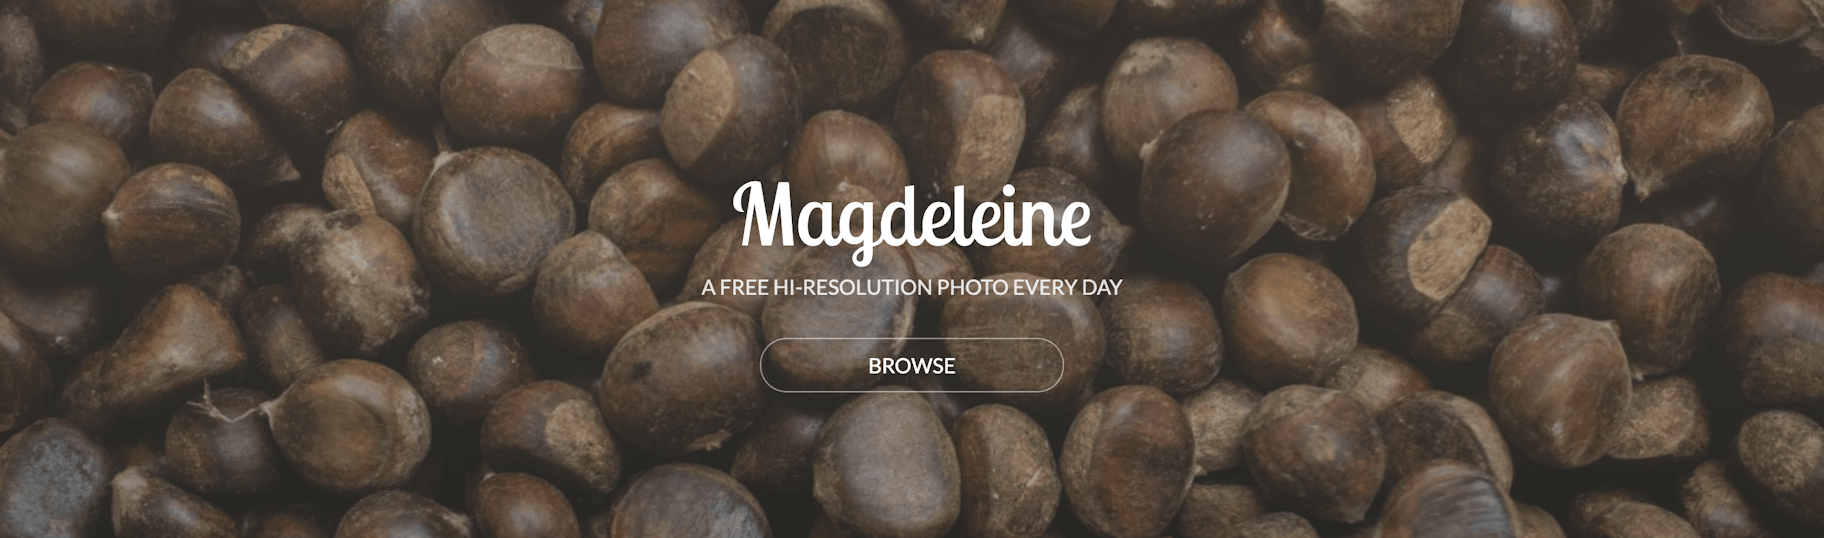 Immagini gratis, Magdeline